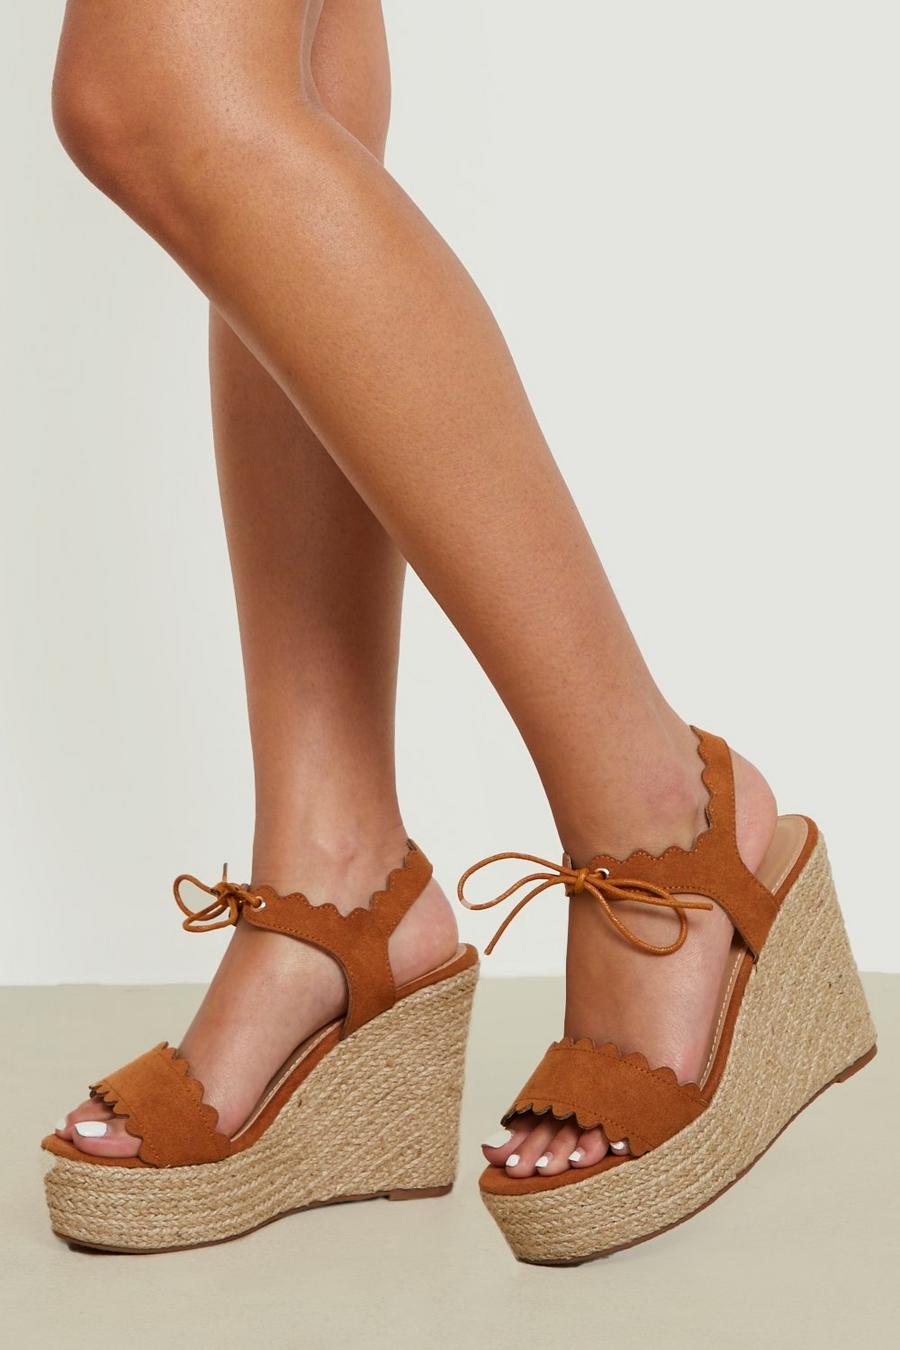 Sandali con zeppe alte e dettagli smerlati, Tan marrón